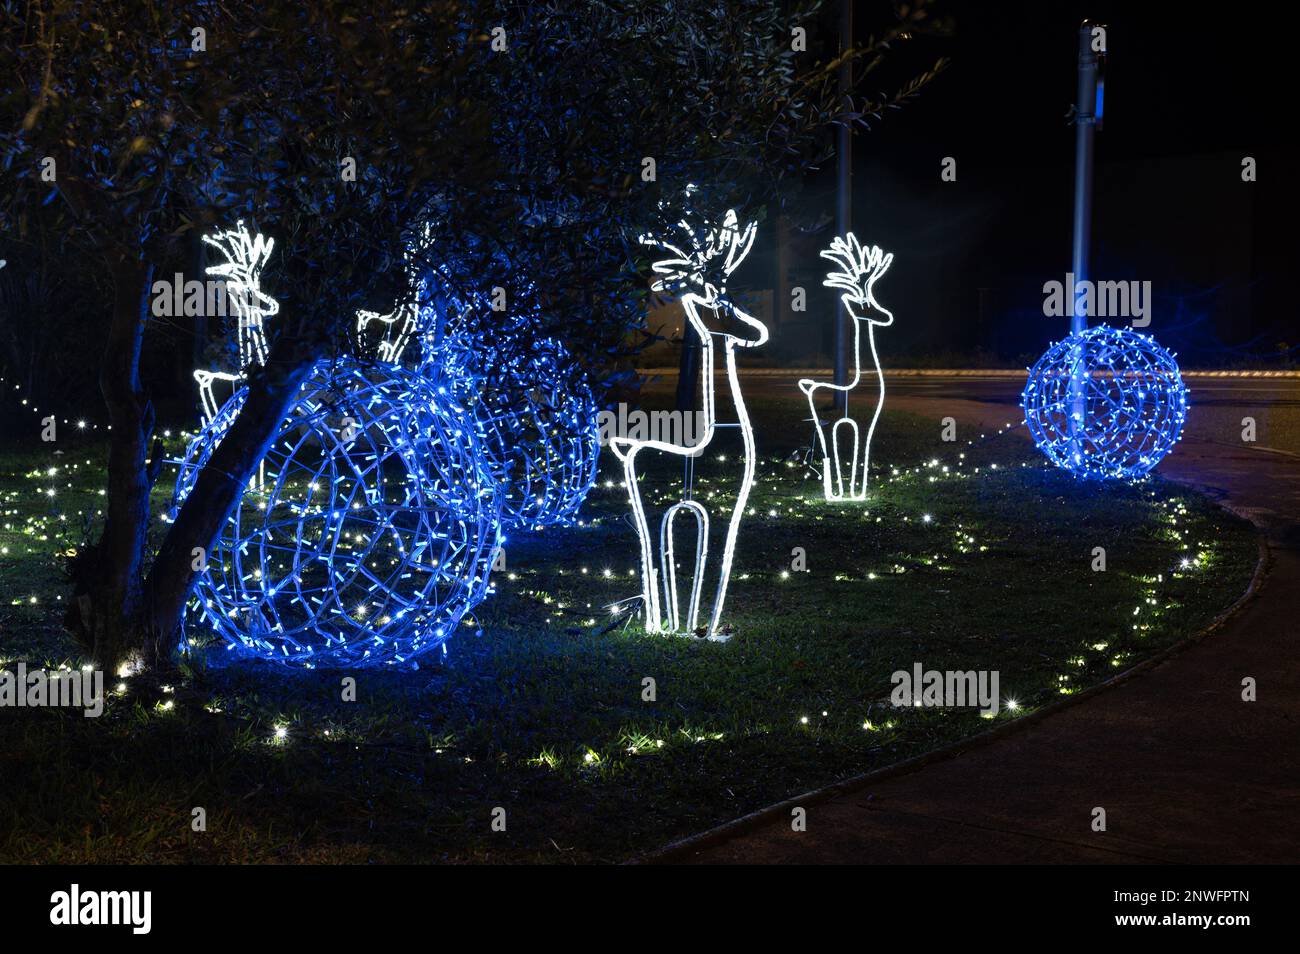 Décorations lumineuses de Noël, rennes blancs et boules bleues sur un tapis d'herbe Foto Stock